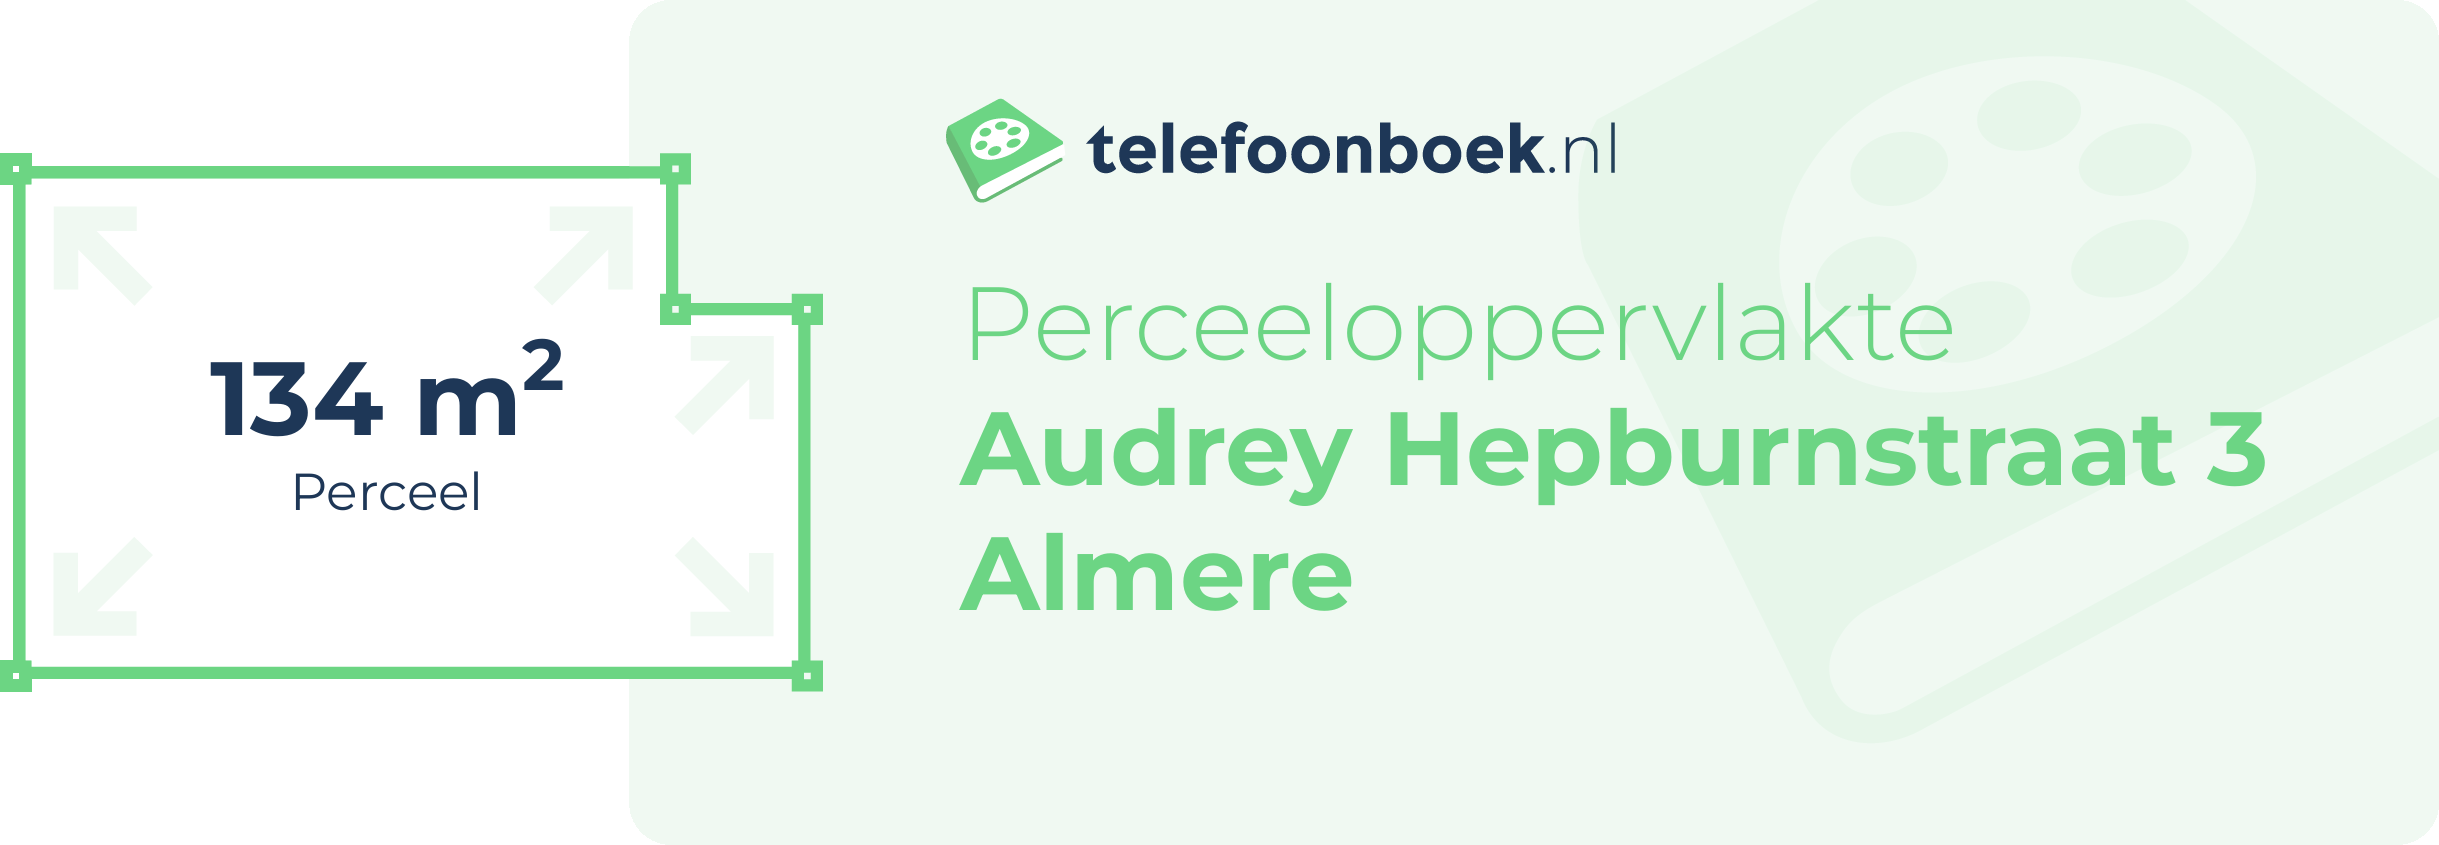 Perceeloppervlakte Audrey Hepburnstraat 3 Almere